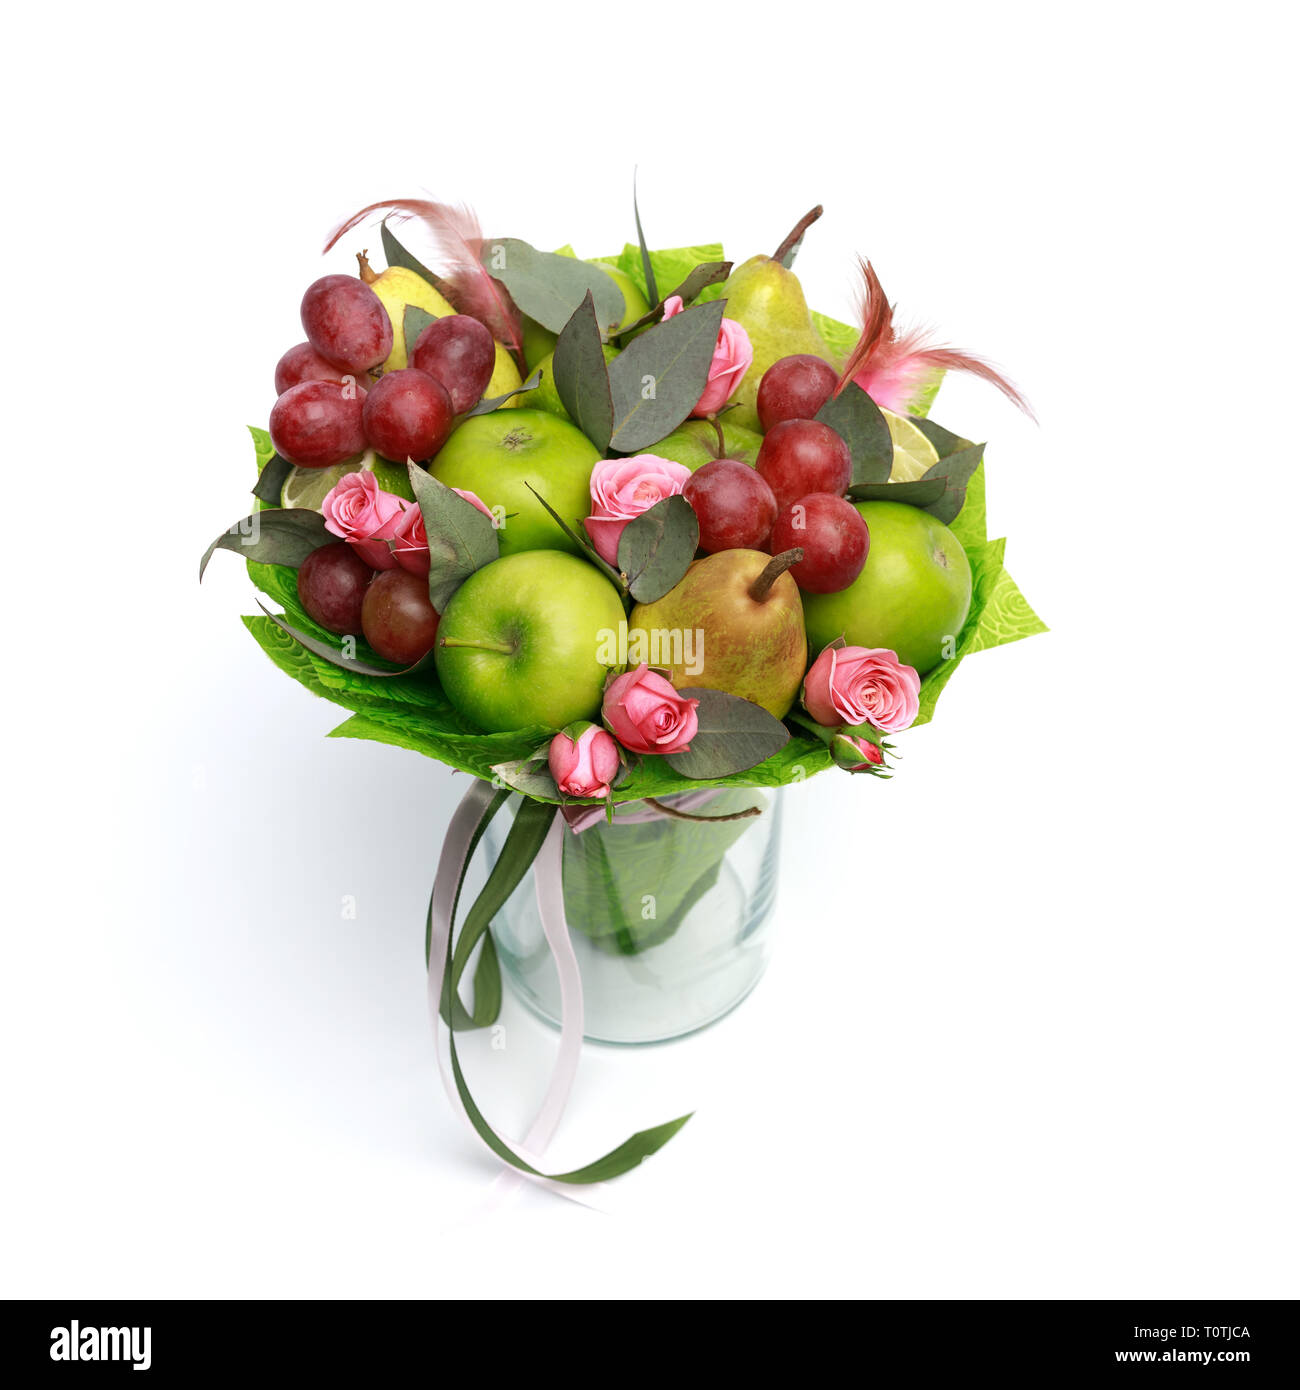 Artigianale unico dono commestibili in forma di un bouquet di fiori in piedi in vaso di vetro su uno sfondo bianco Foto Stock